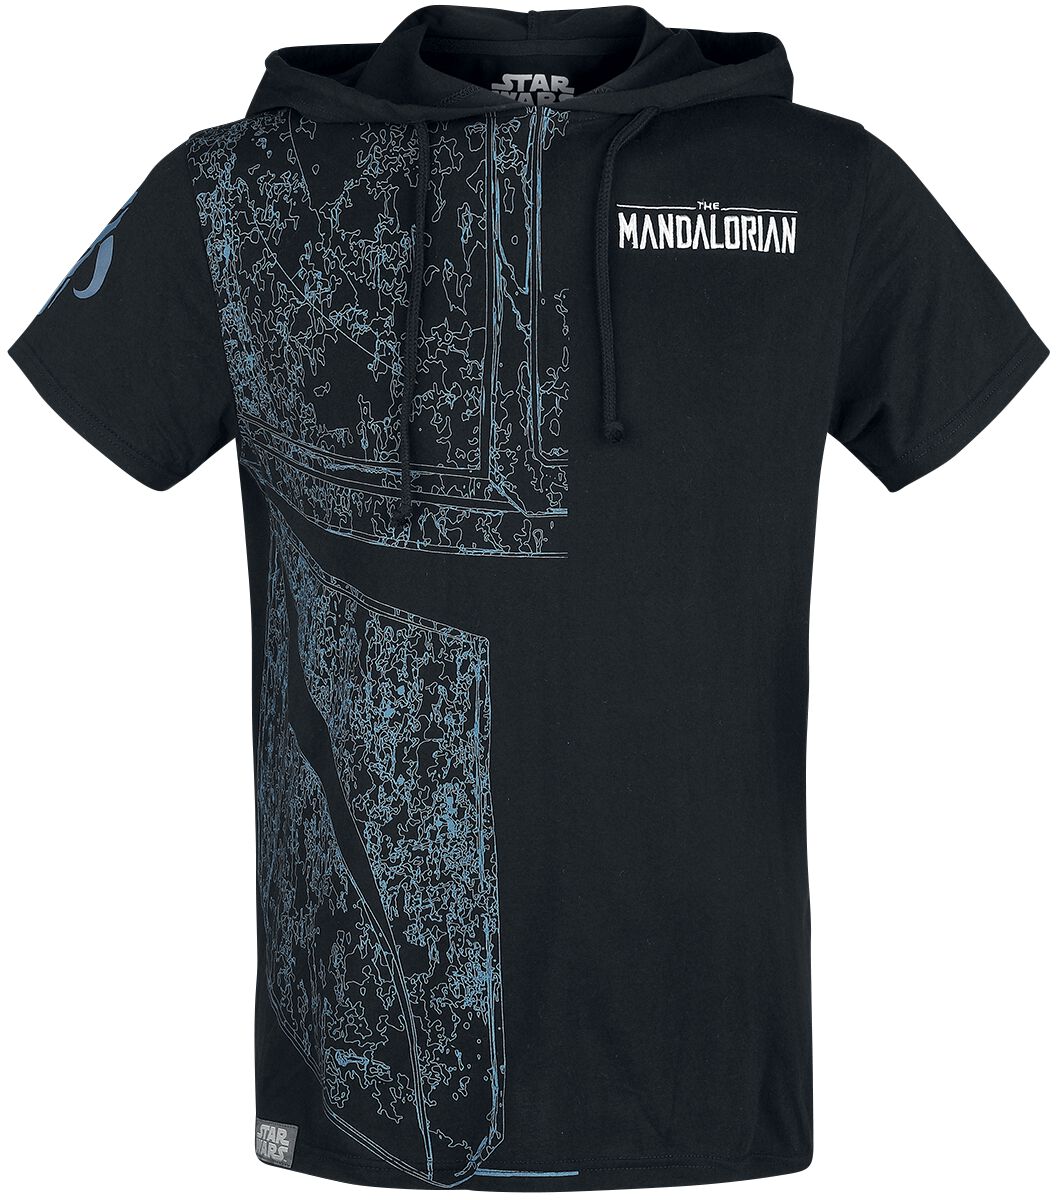 Star Wars T-Shirt - The Mandalorian - S bis XXL - für Männer - Größe XL - schwarz  - EMP exklusives Merchandise!